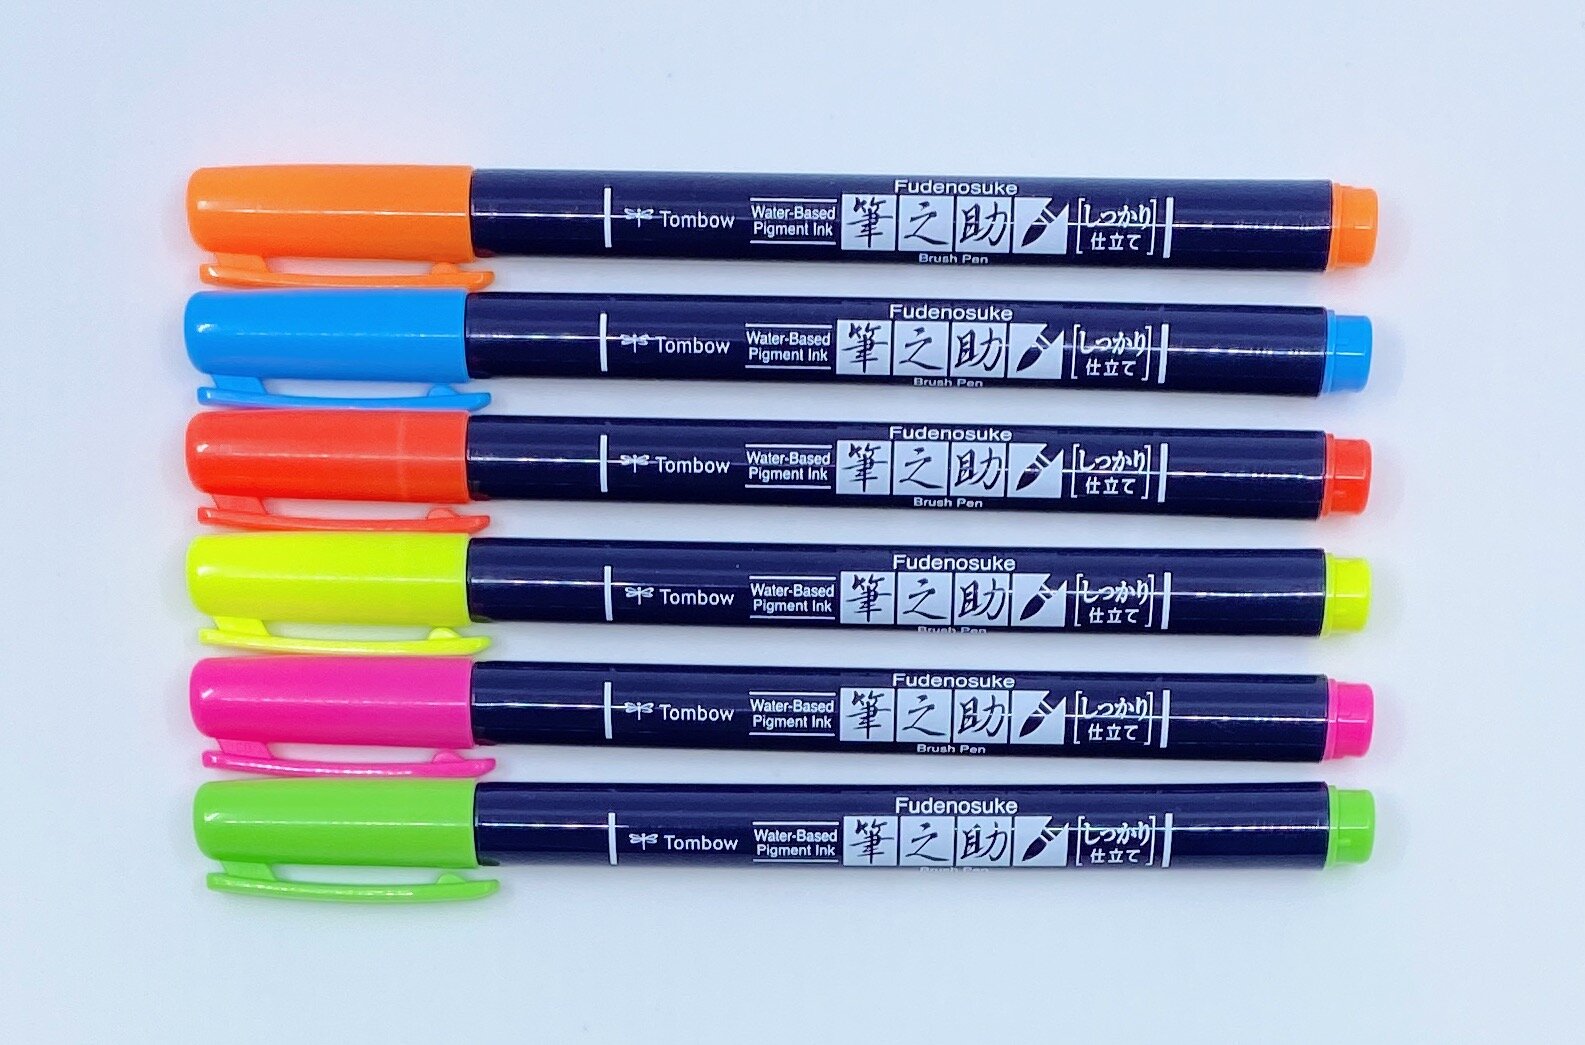 Brush Pen Review: Pentel Ultra Fine Artist Brush Sign Pen - The  Well-Appointed Desk